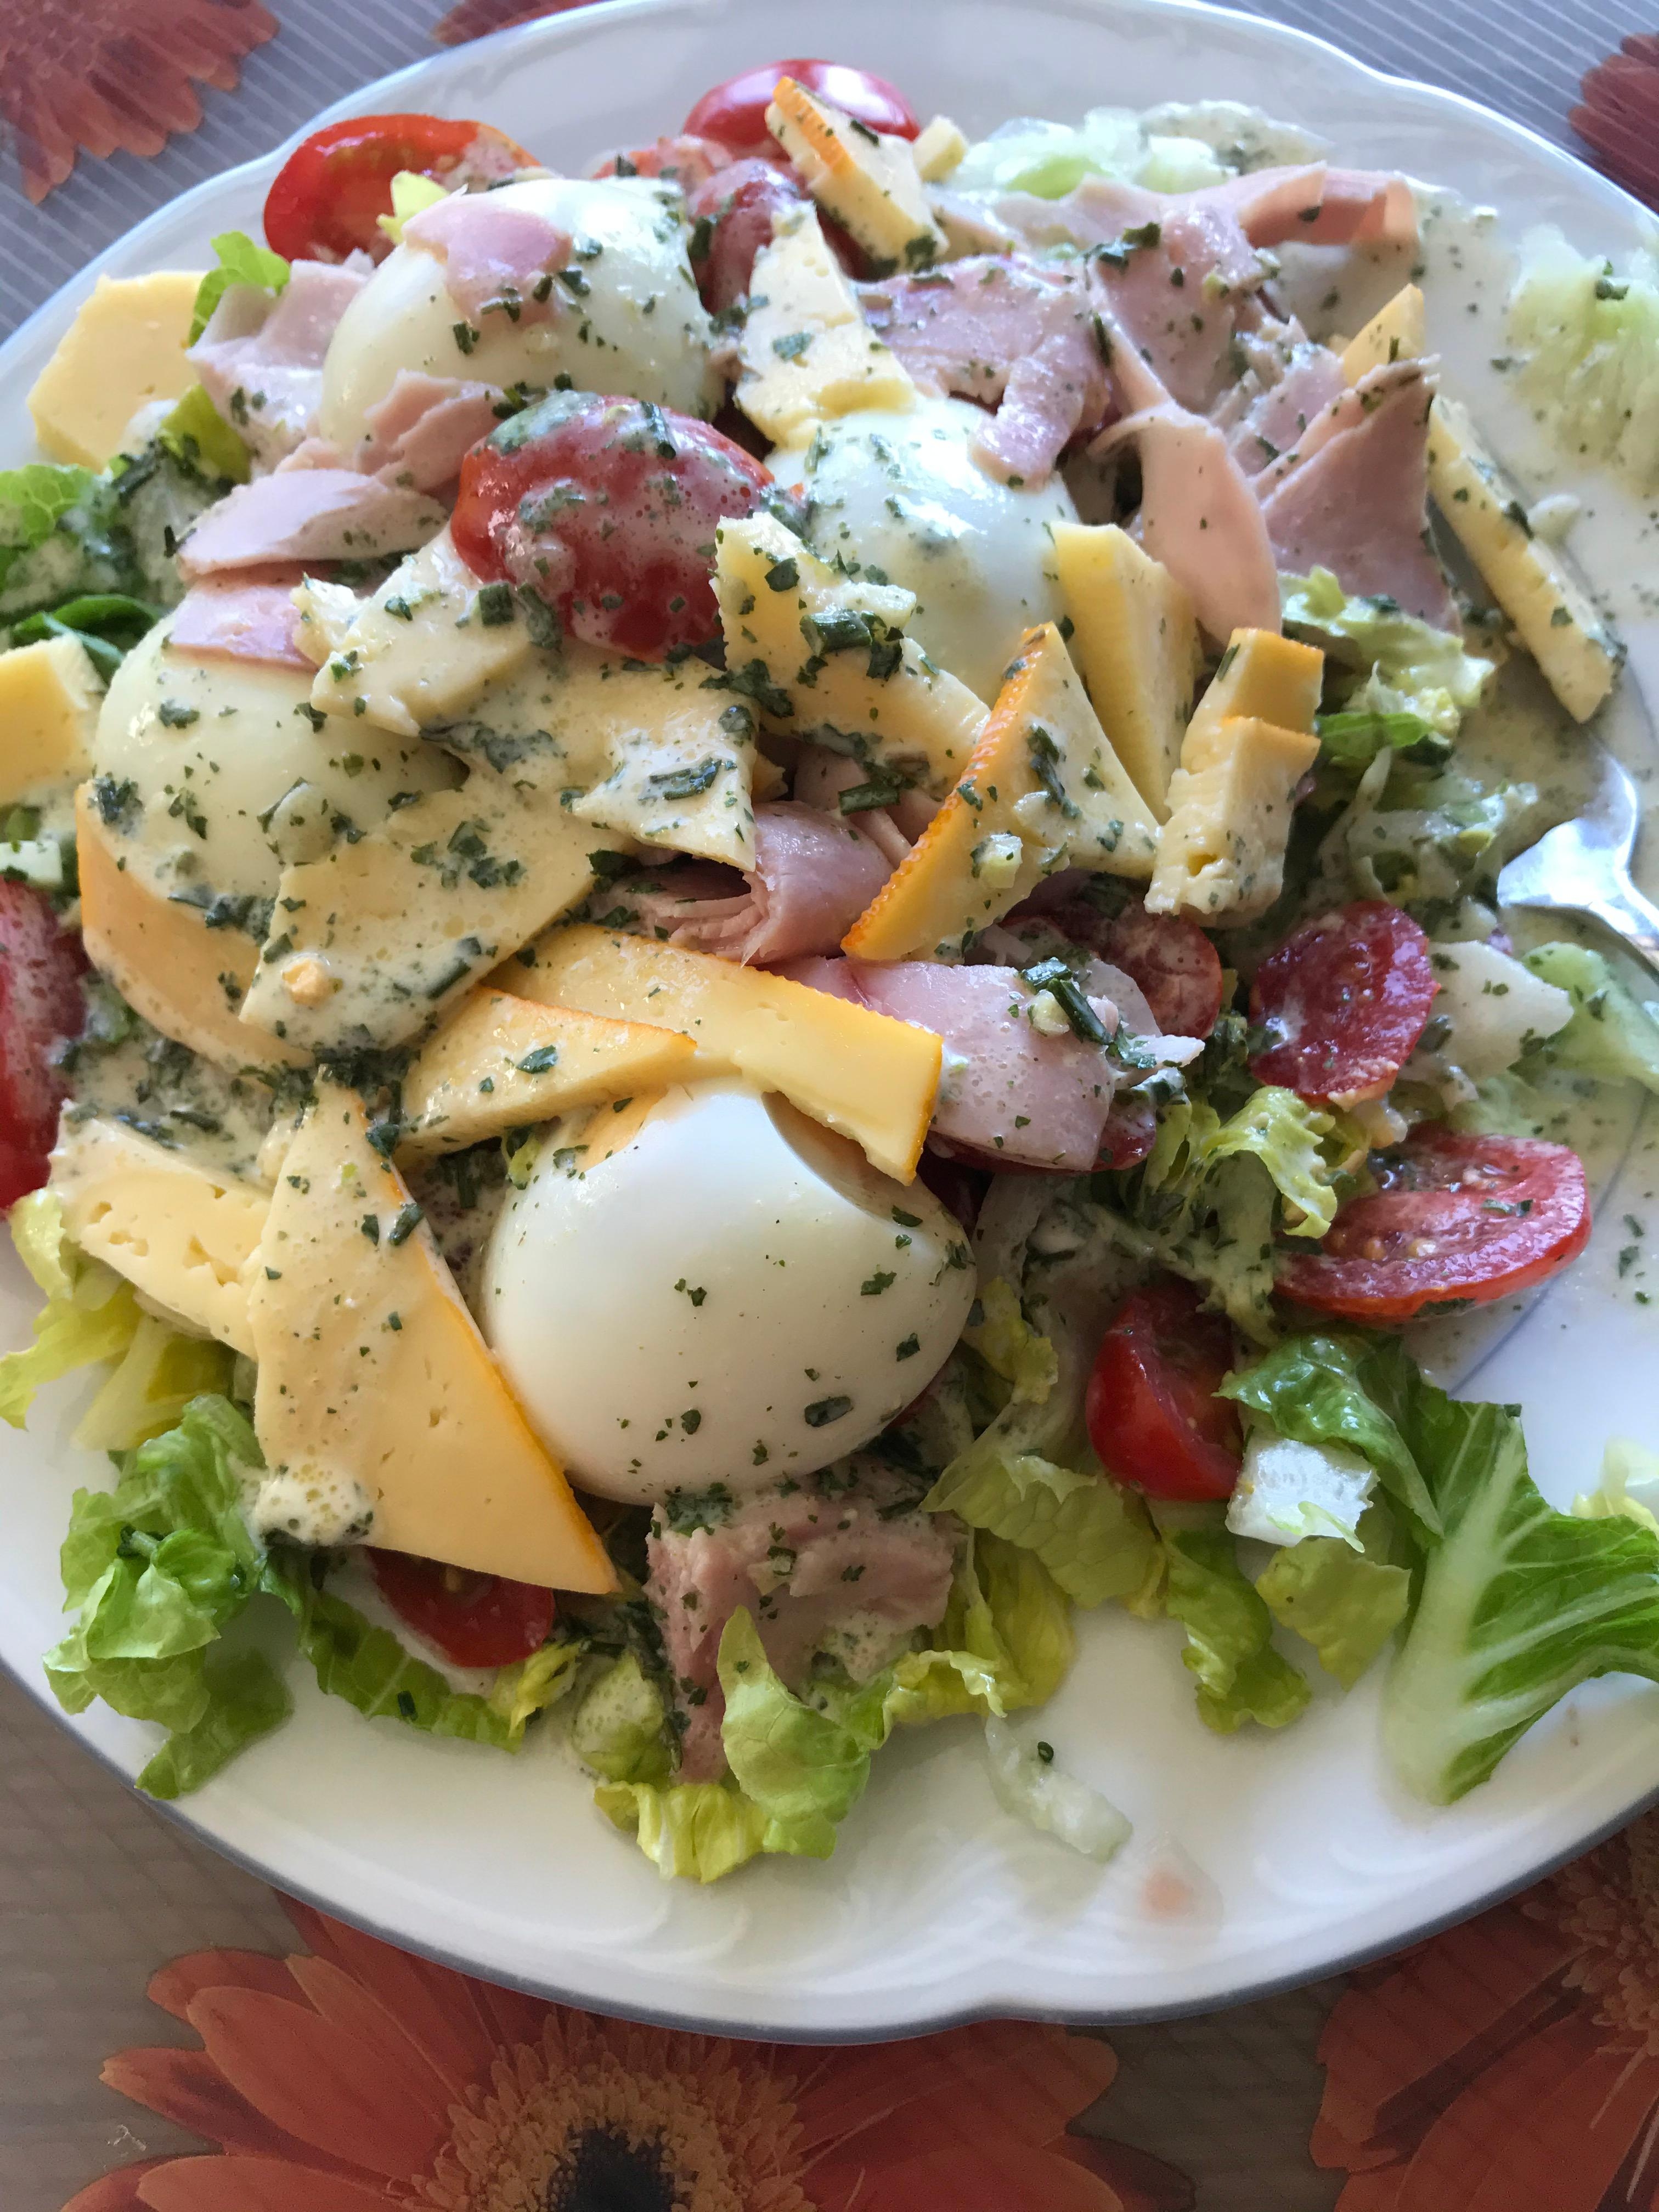 Schnell zubereiteter Salat geht bei dieser Hitze immer :) 
#leichtes #mittagessen #küche #foodlover